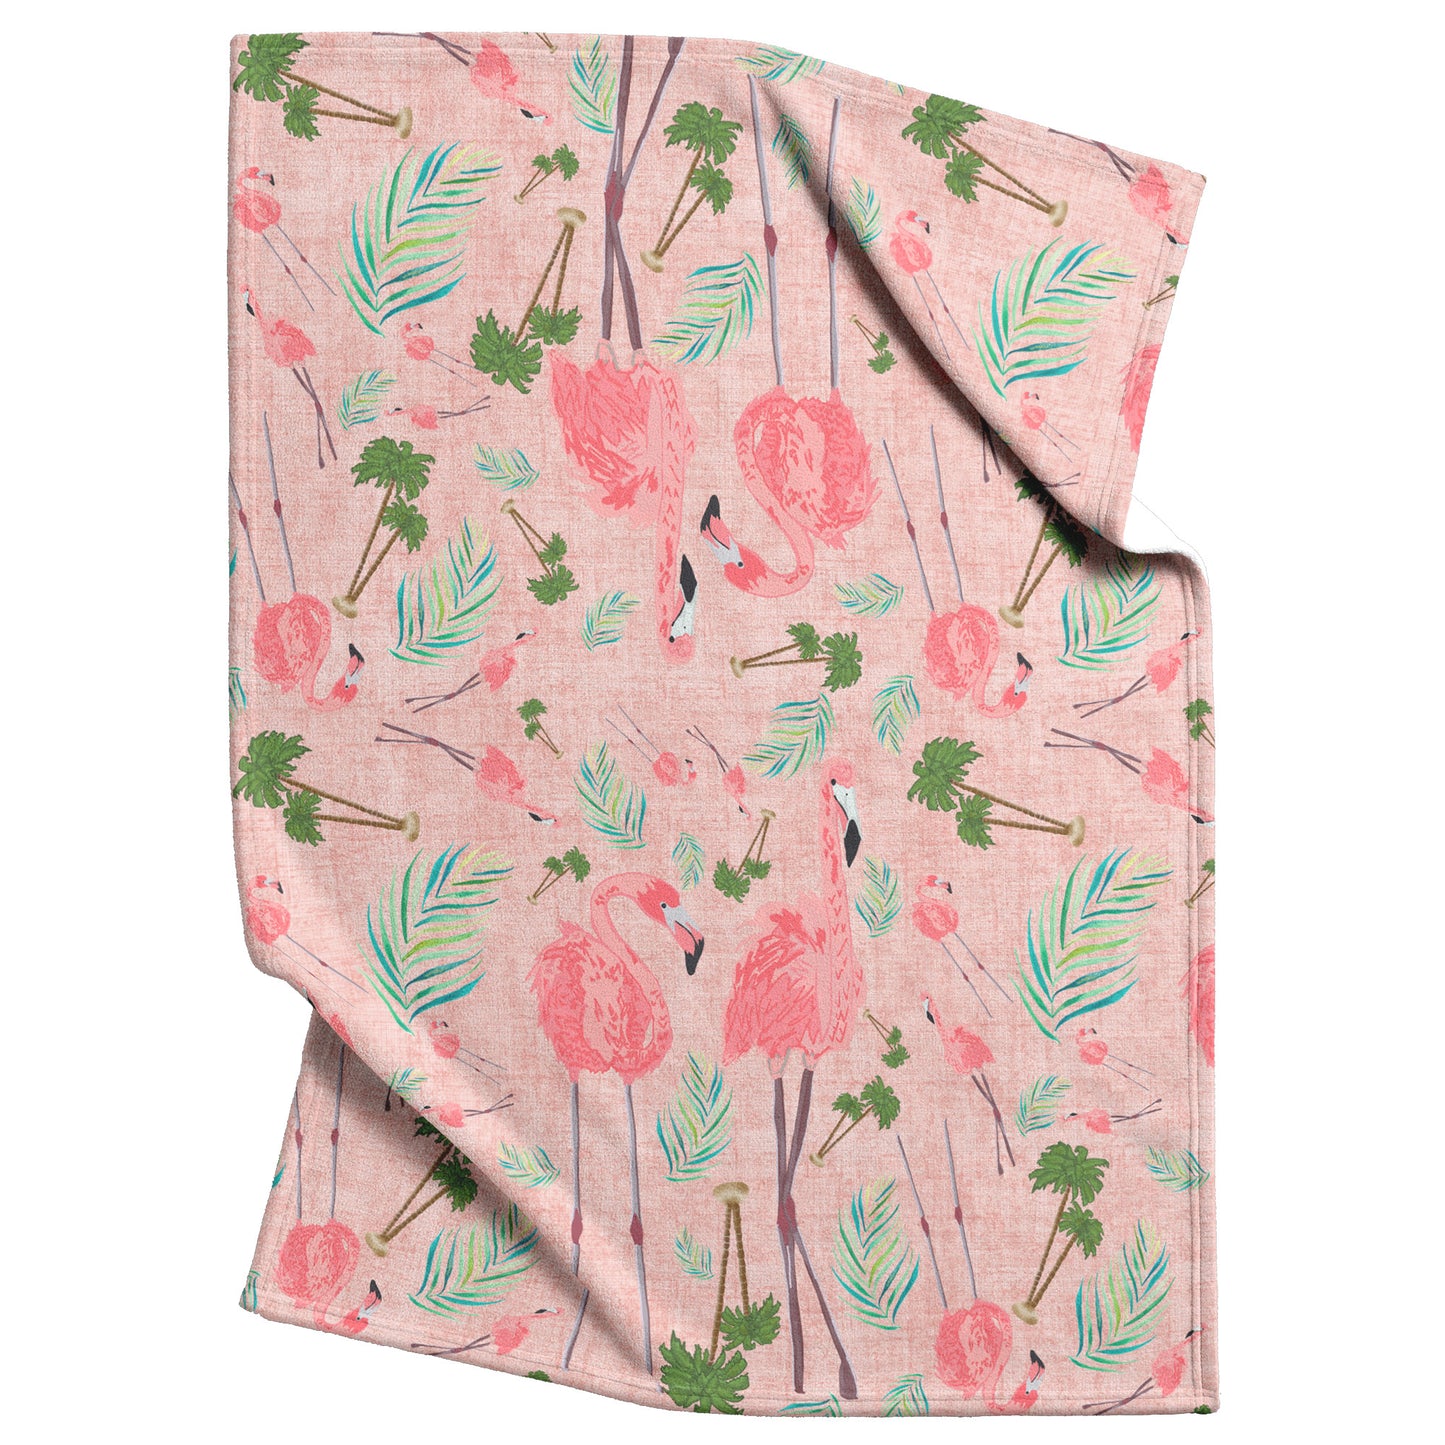 Flamingos on Coral Linen Textured Background, Fleece Blanket